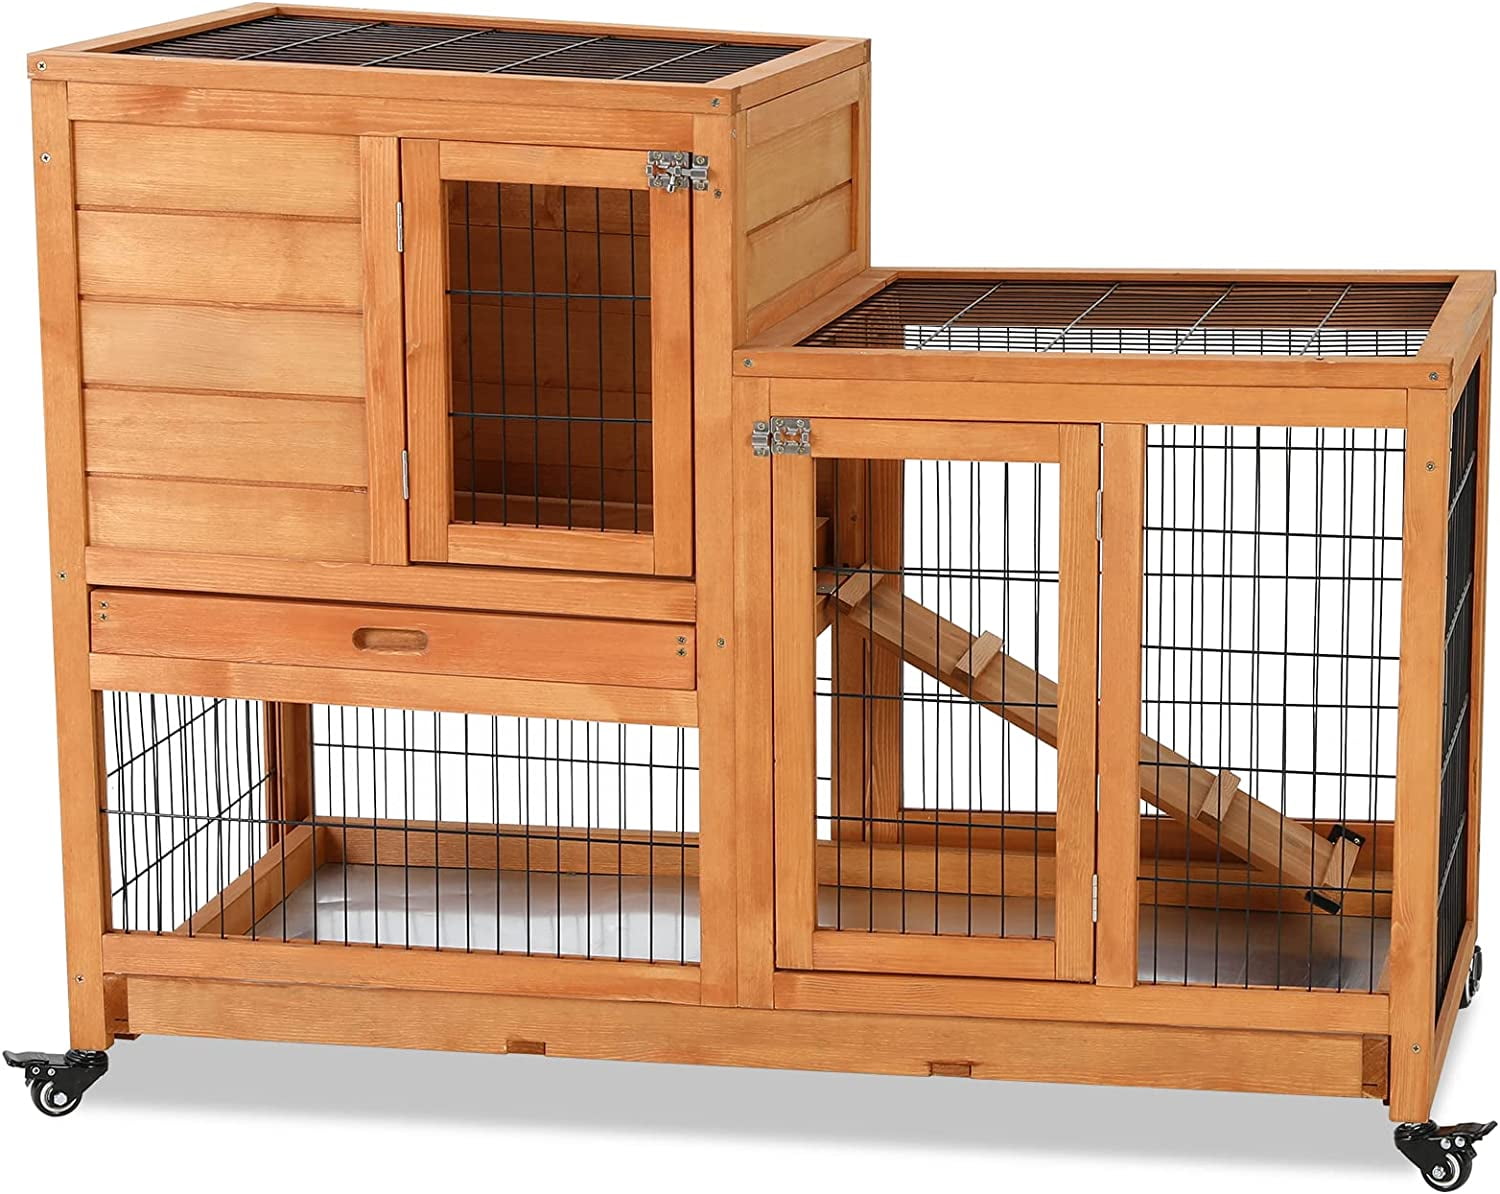 Esright 43” Rabbit Hutch Rabbit Cage Outdoor Wooden Bunny House with Ventilation Door Animal Enclosure 